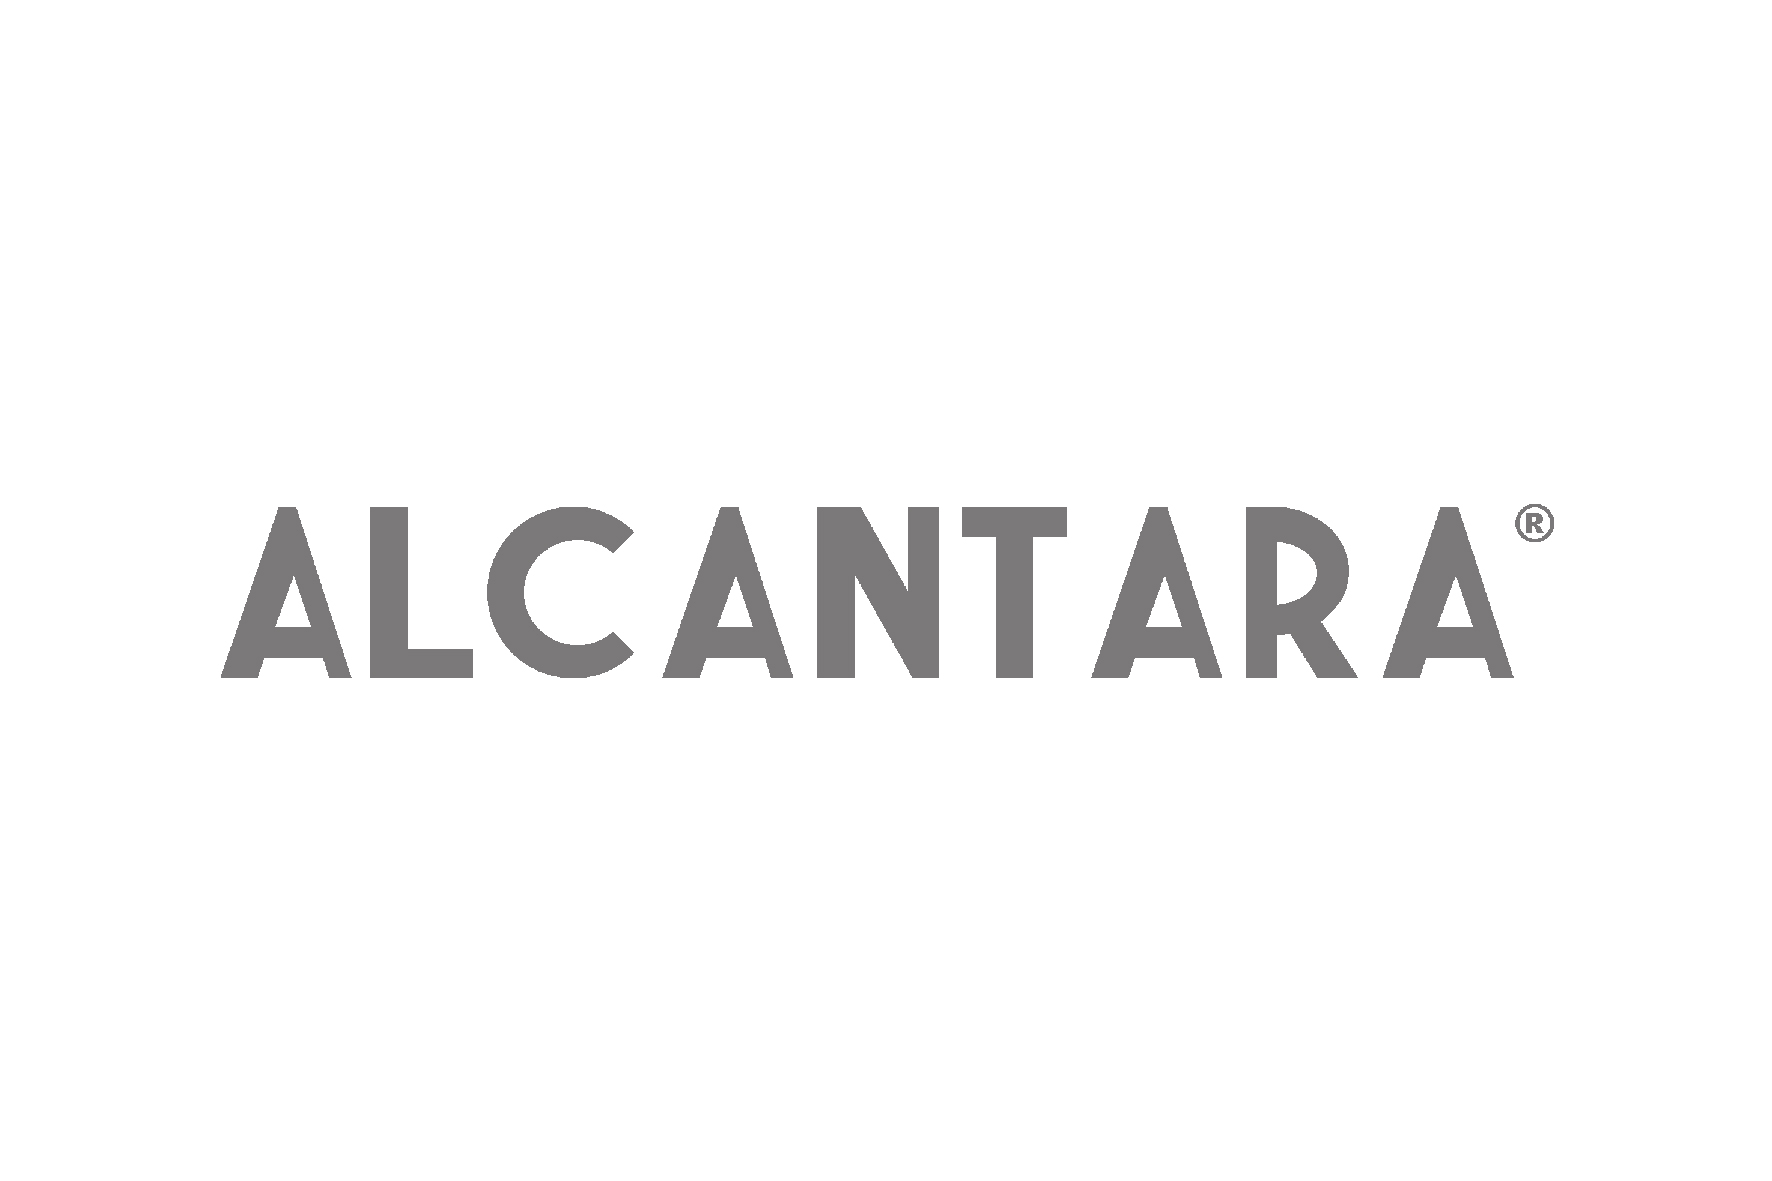 ALCANTARA DESIGN